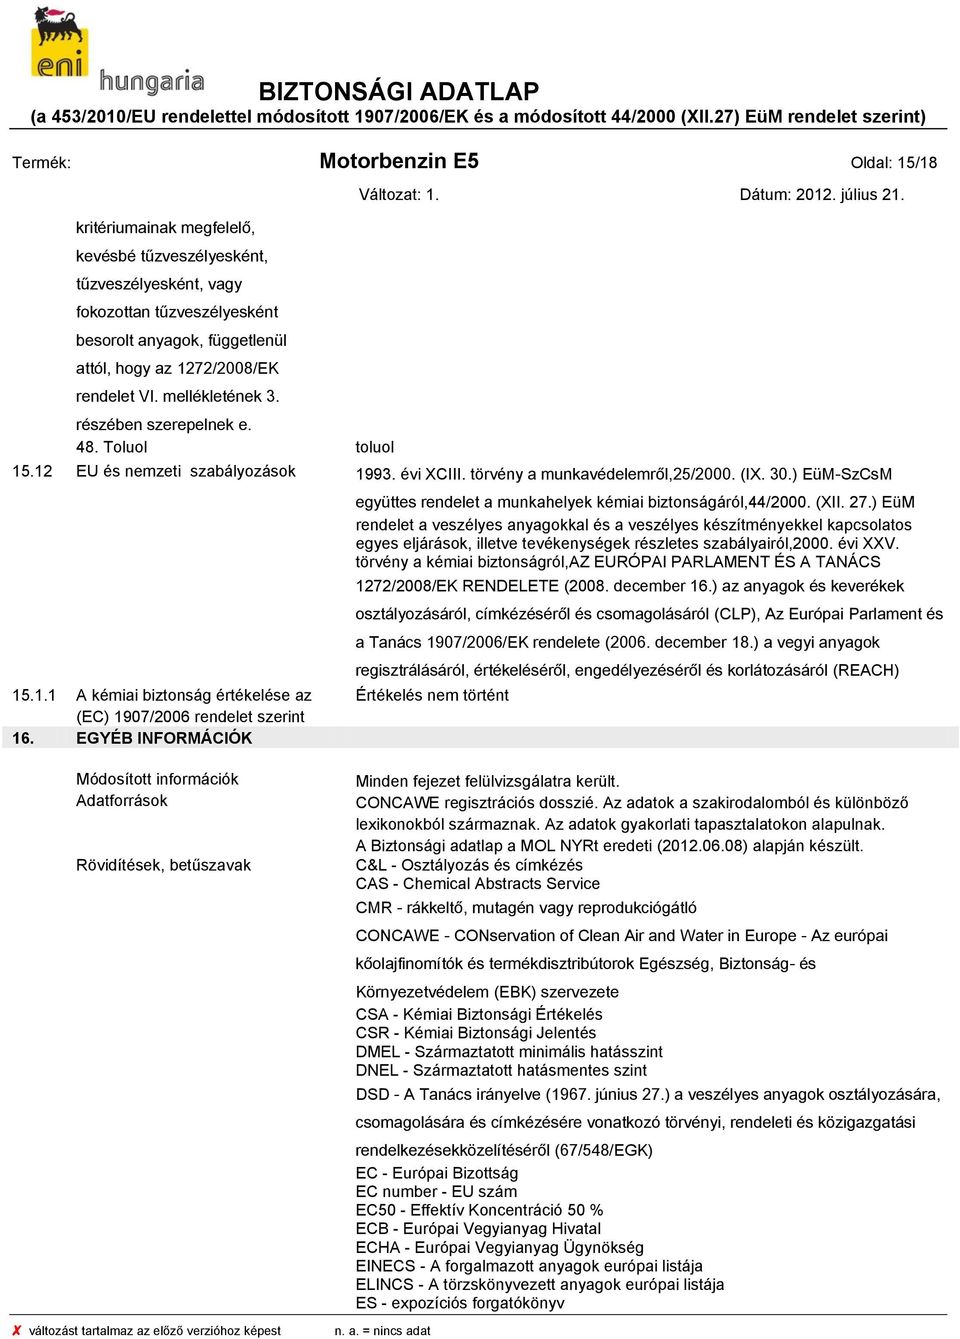 EGYÉB INFORMÁCIÓK együttes rendelet a munkahelyek kémiai biztonságáról,44/2000. (XII. 27.